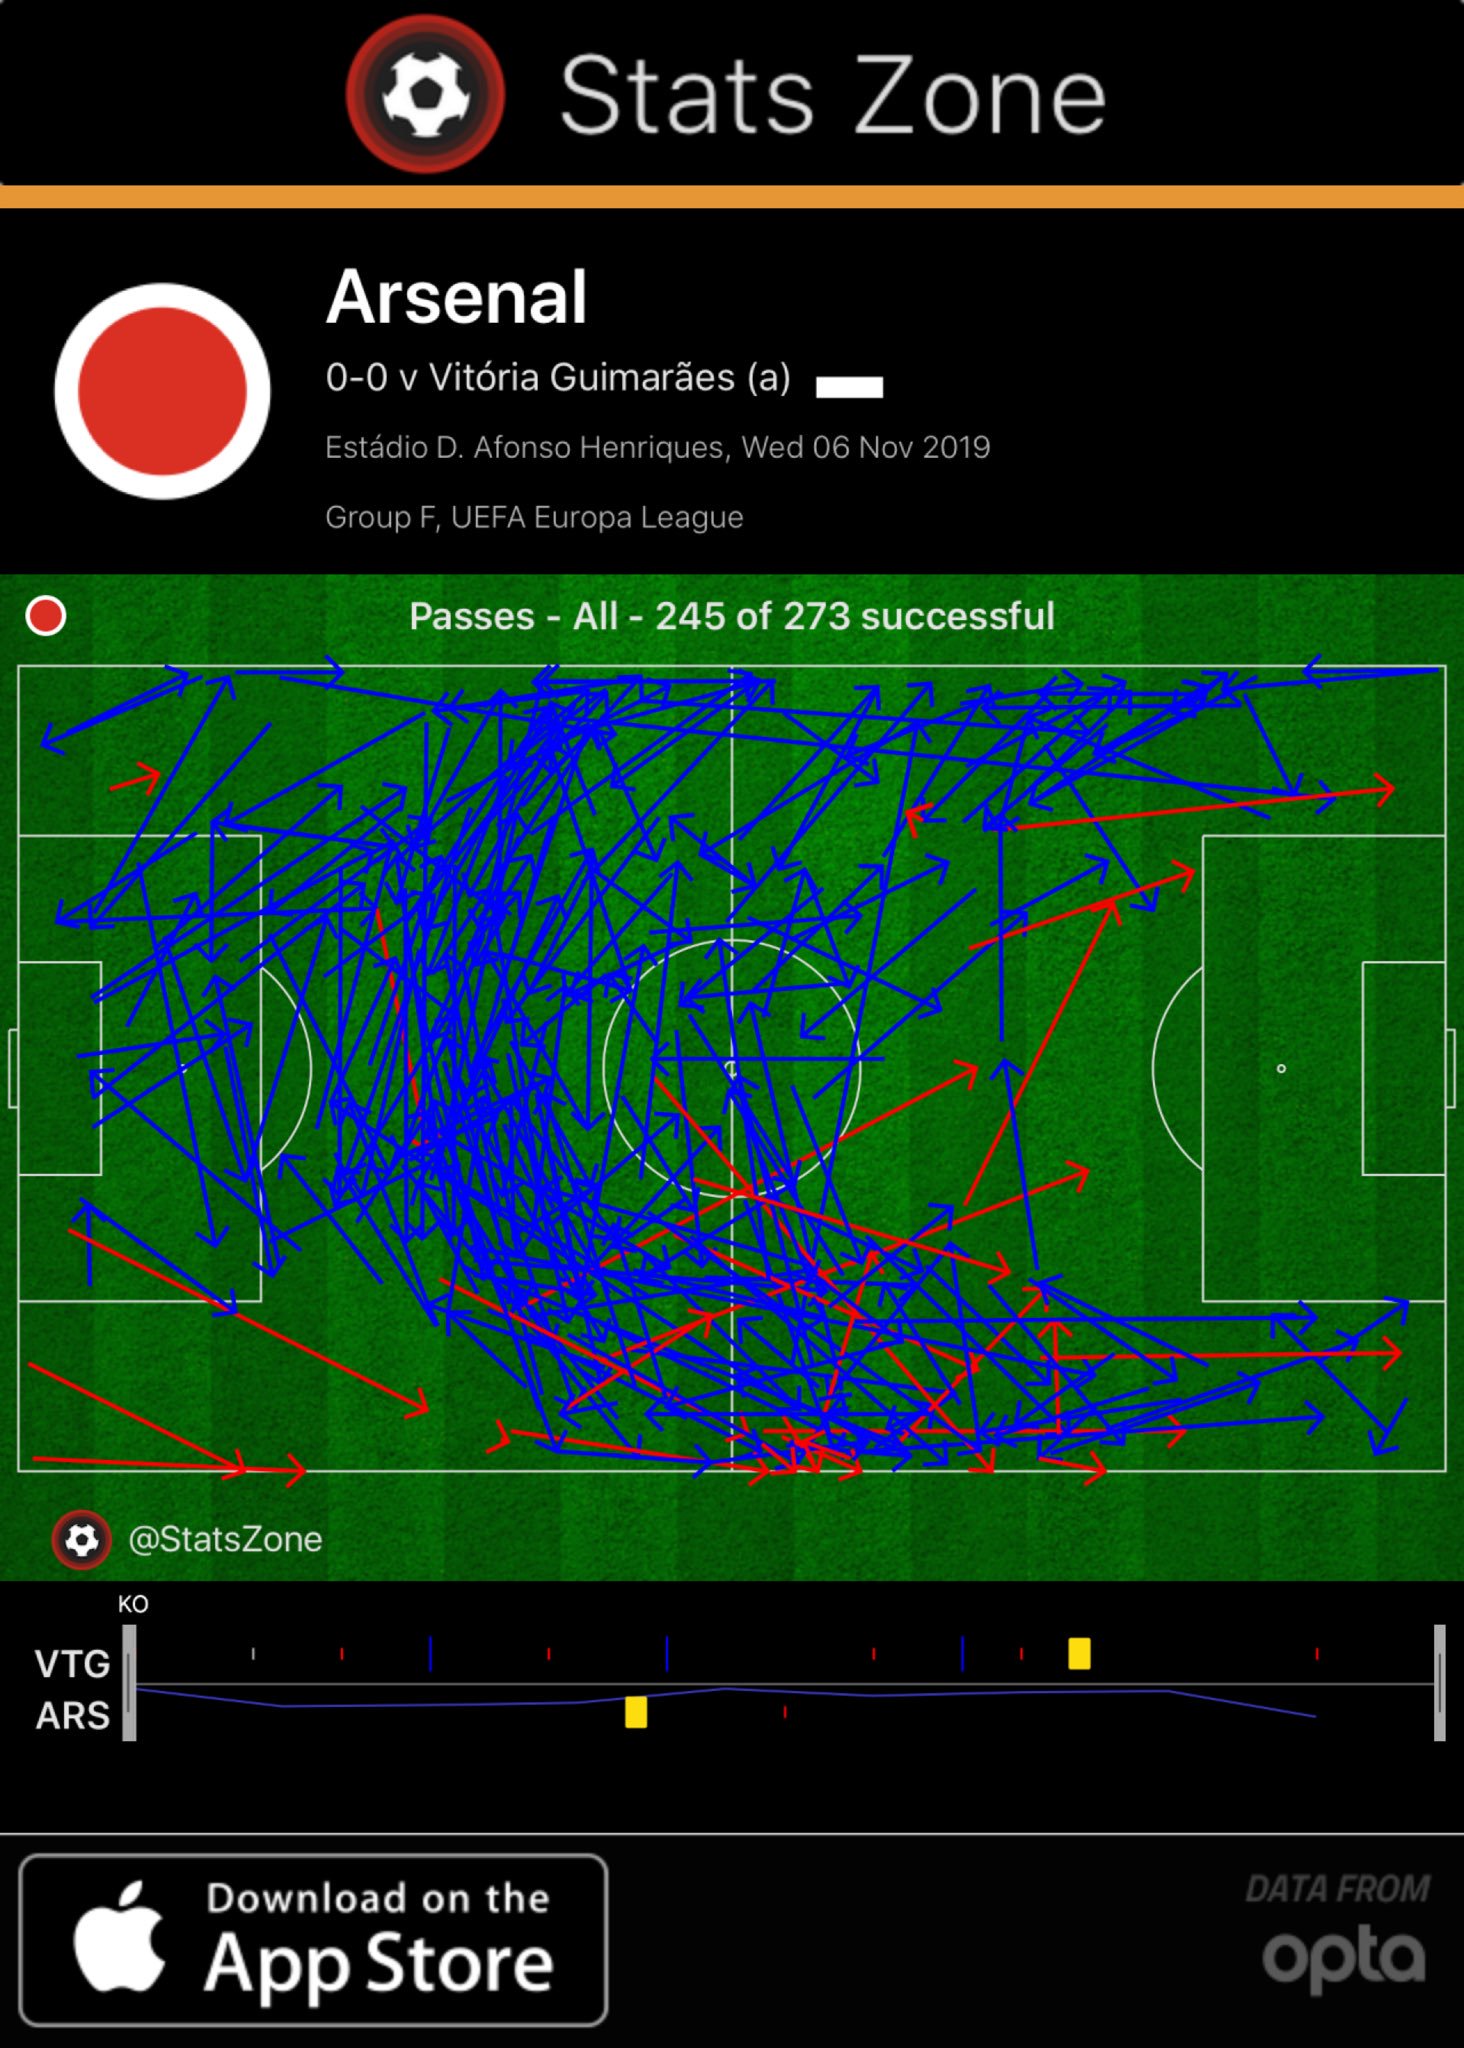 Arsenal's first half passes vs Vitoria